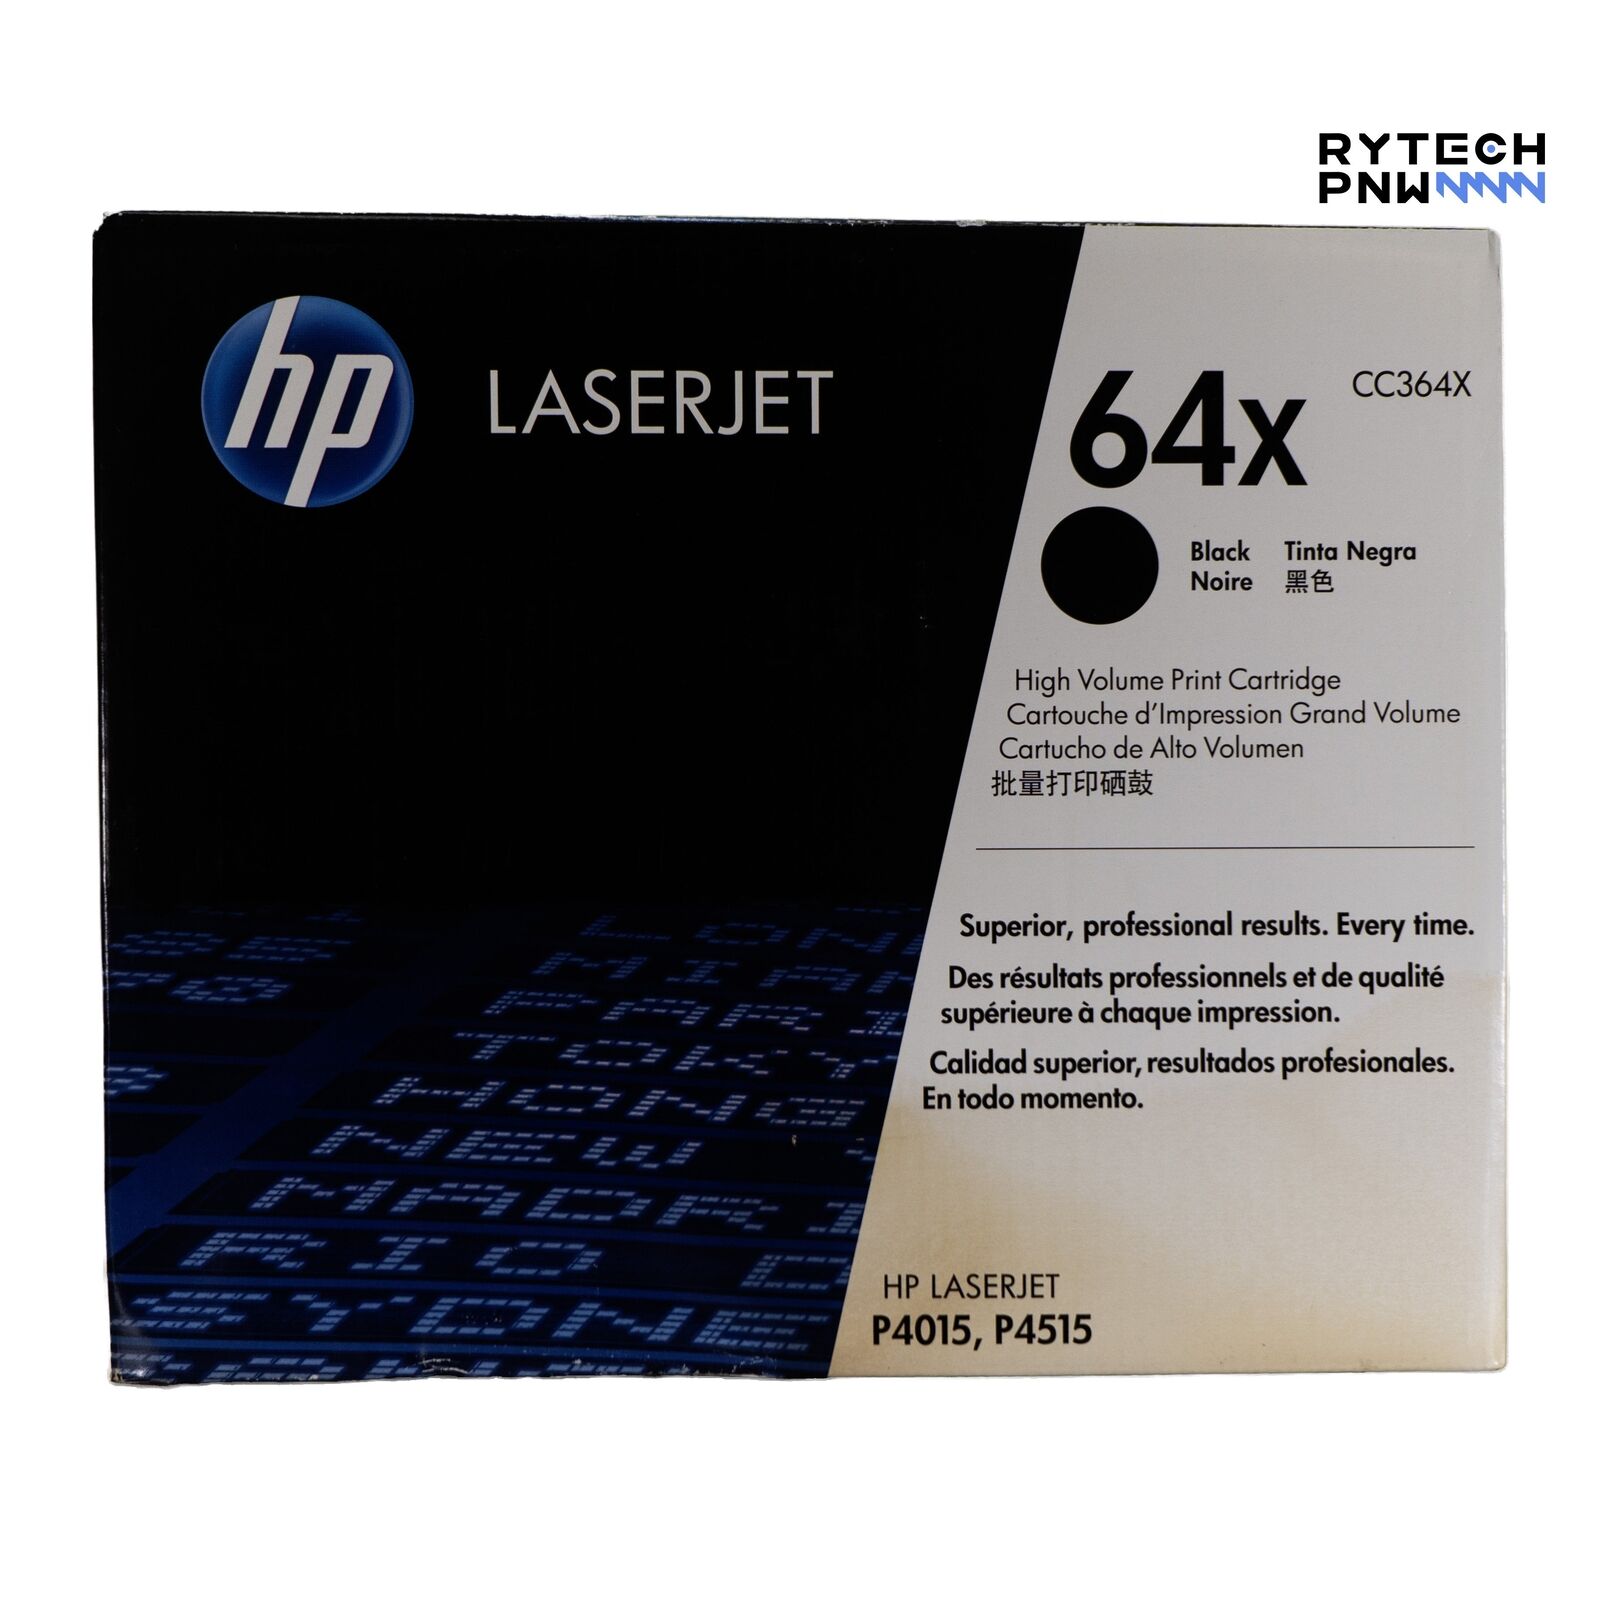 HP Laserjet Toner Cartridge 64x CC364X (P4015, P4515), Black